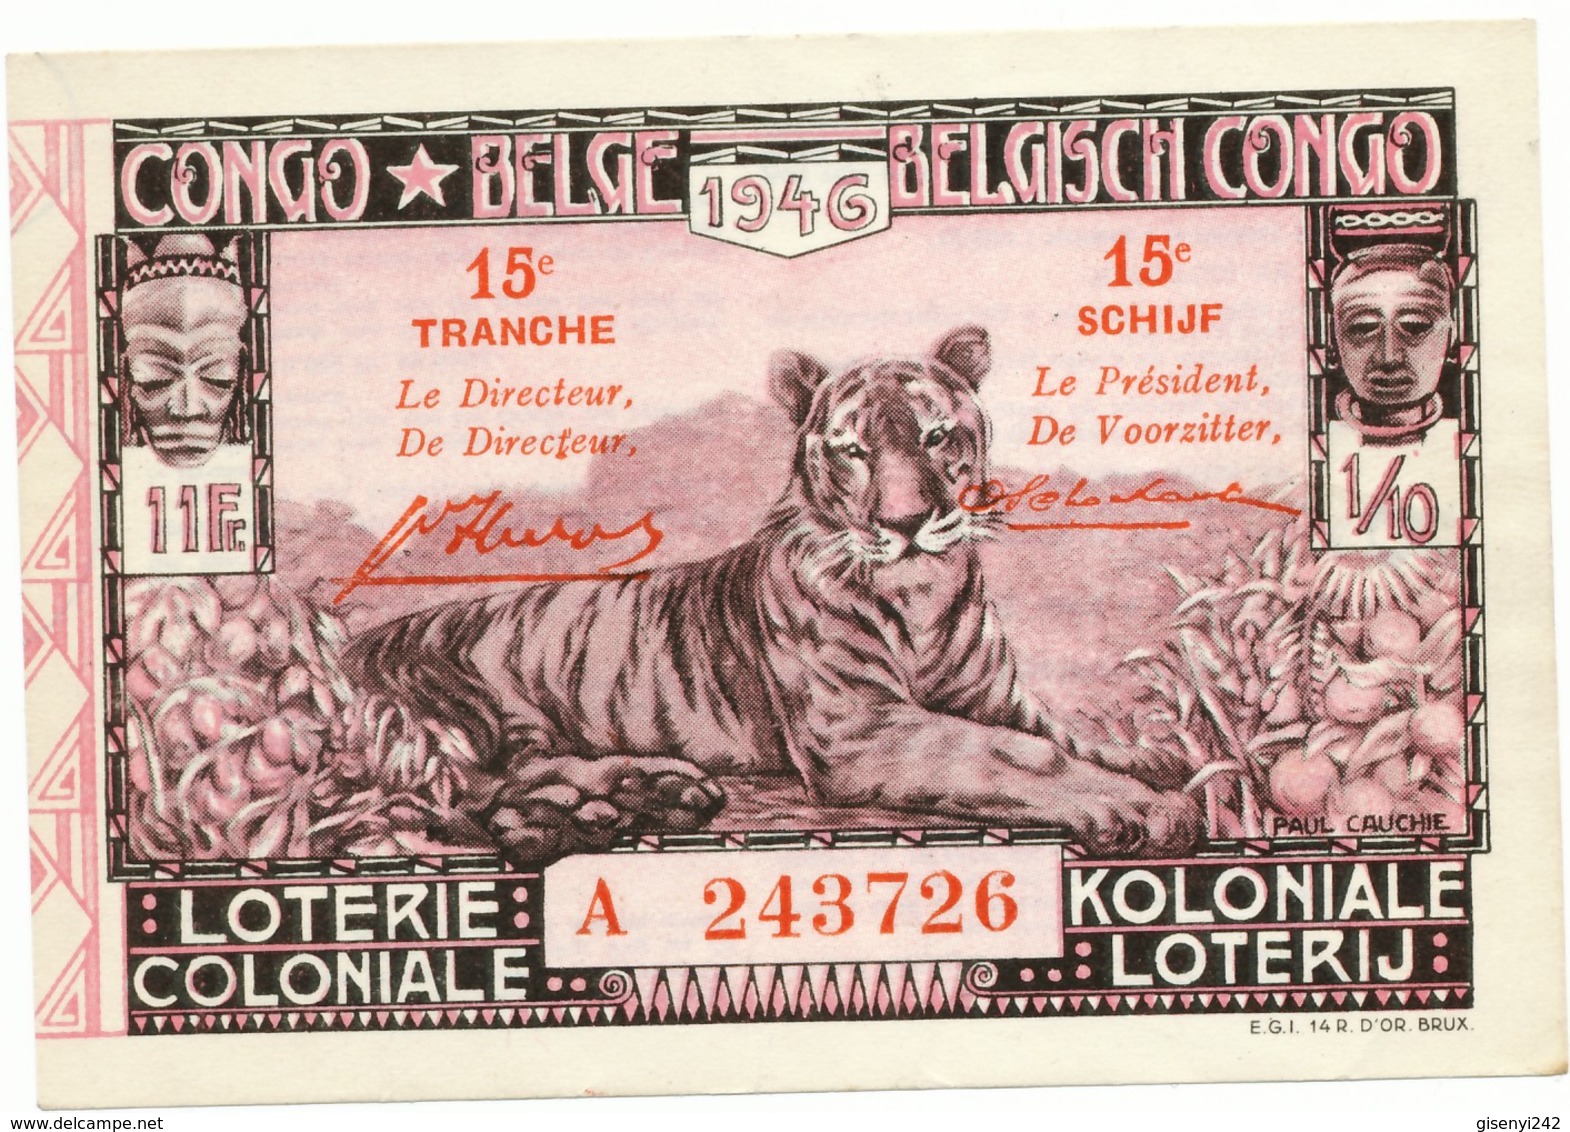 Loterie Coloniale - Koloniale Loterij 1946 - Tranche 15 Schijf - Billets De Loterie